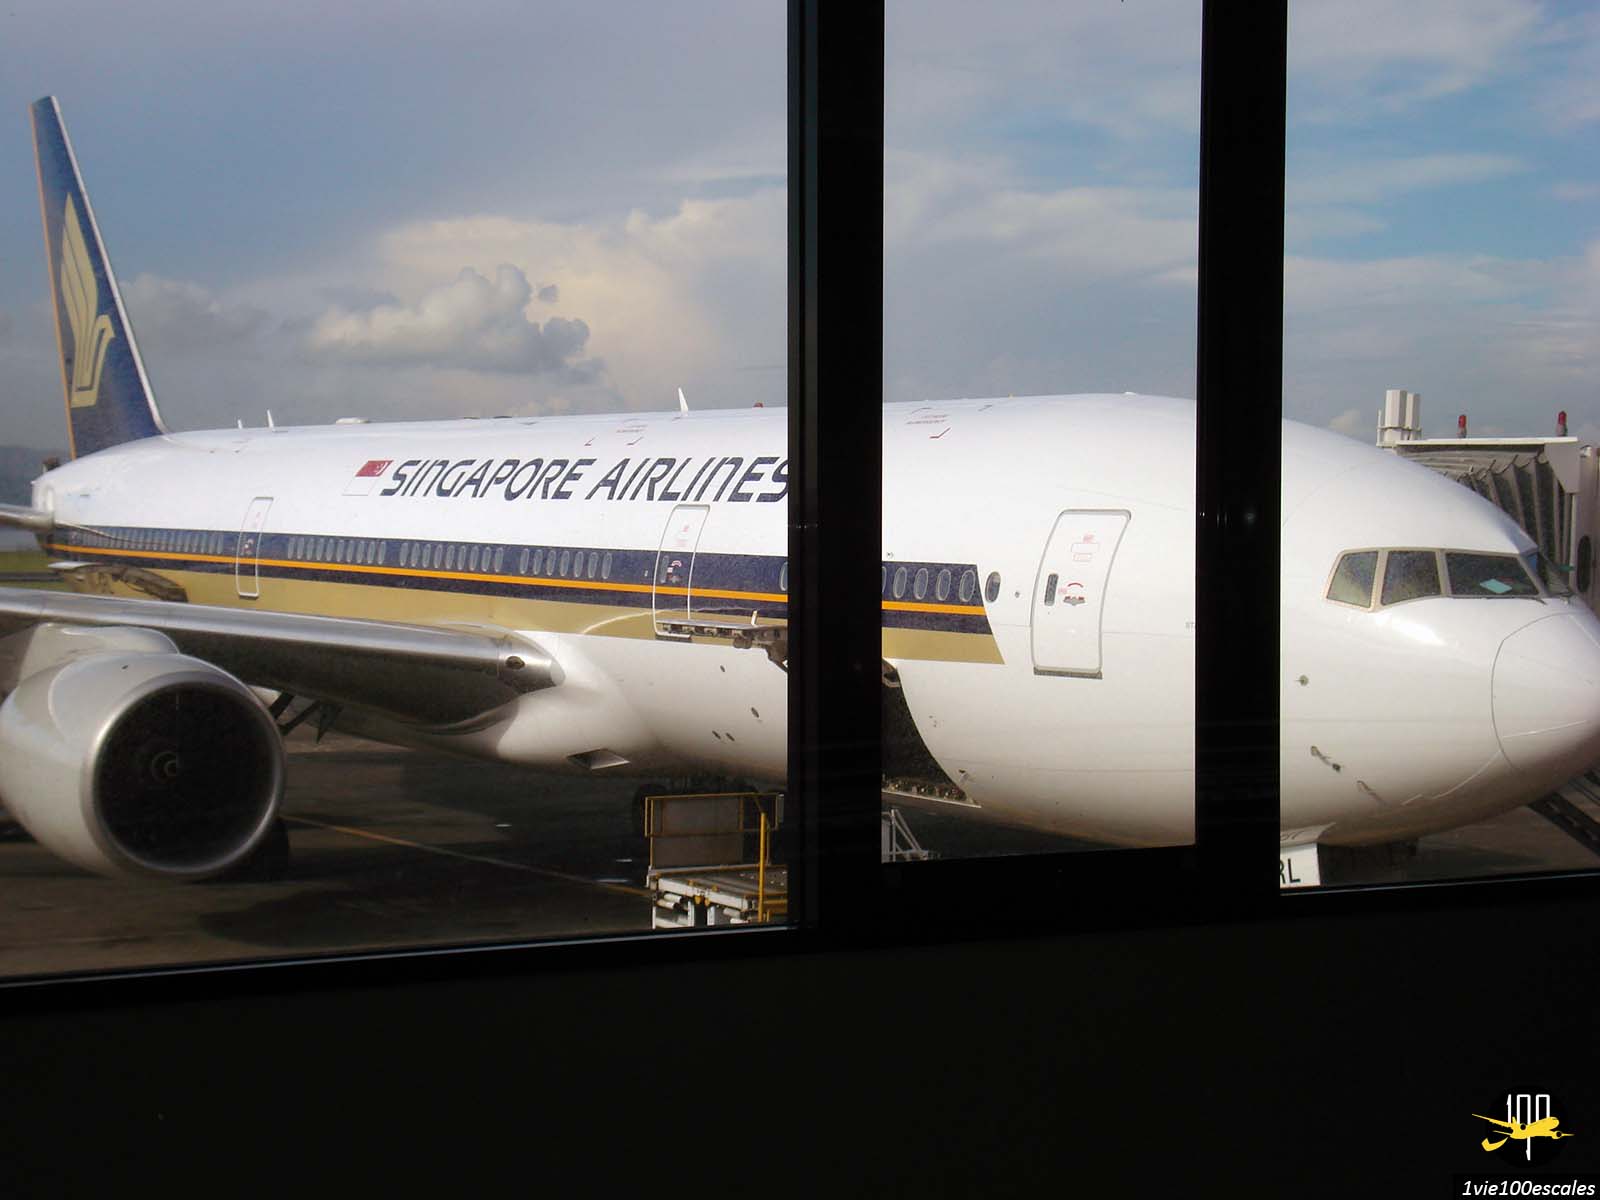 Un avion de la compagnie aérienne Singapore Airlines sur la piste de l'aéroport de Denpasar à Bali